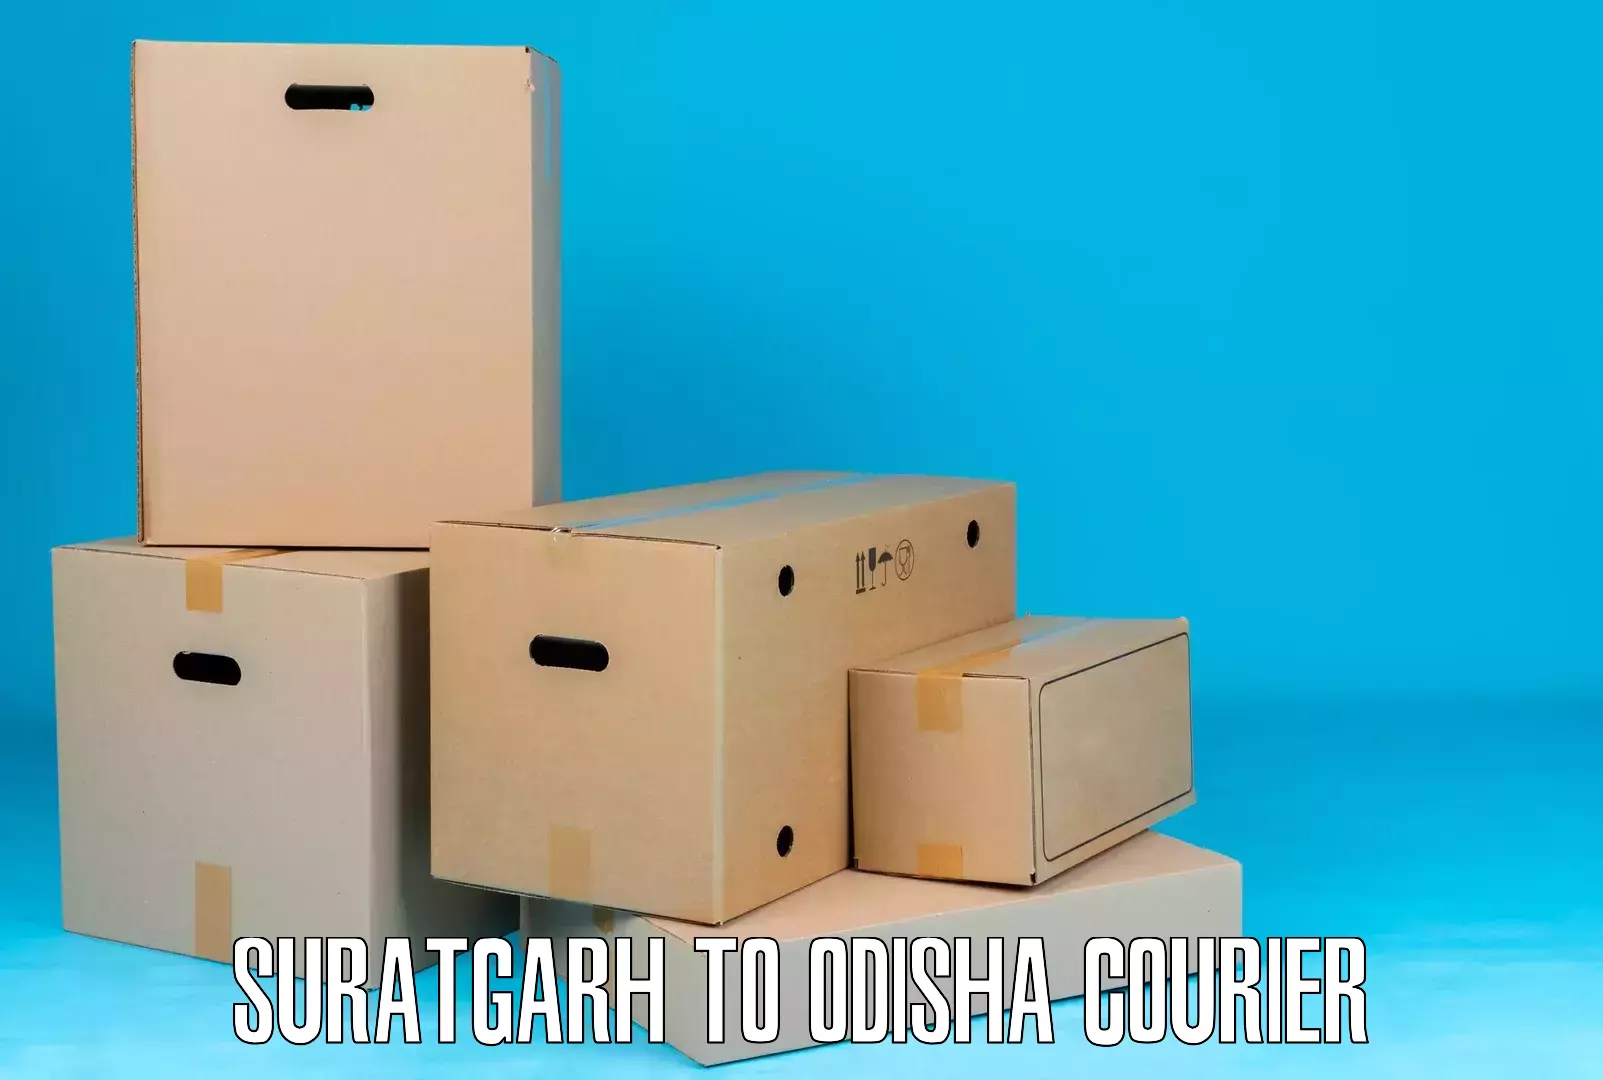 Courier service comparison Suratgarh to Odisha